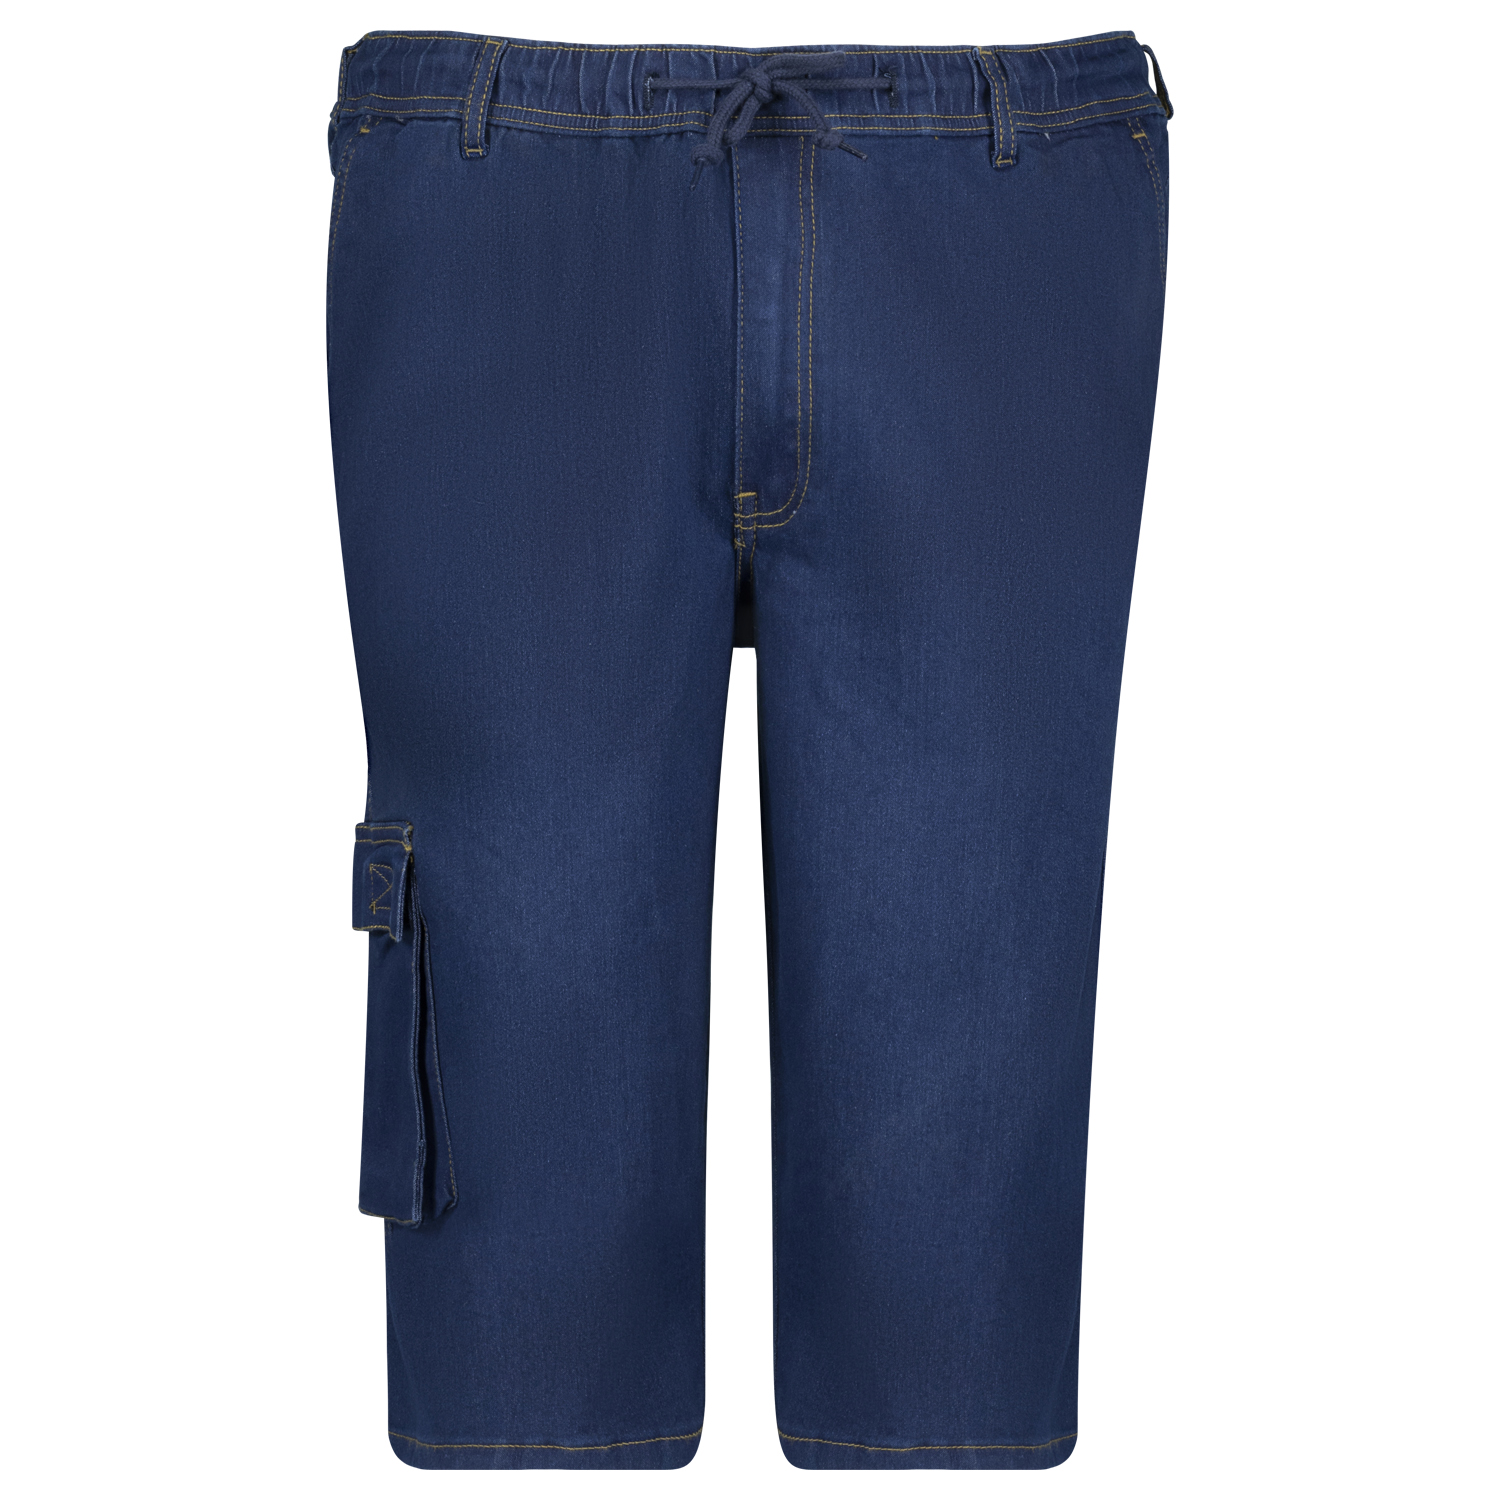 Jogging jeans pantacourt hyperstretch taille élastiquée "DALLAS" bleu marine by Adamo grandes tailles jusqu'au 12XL